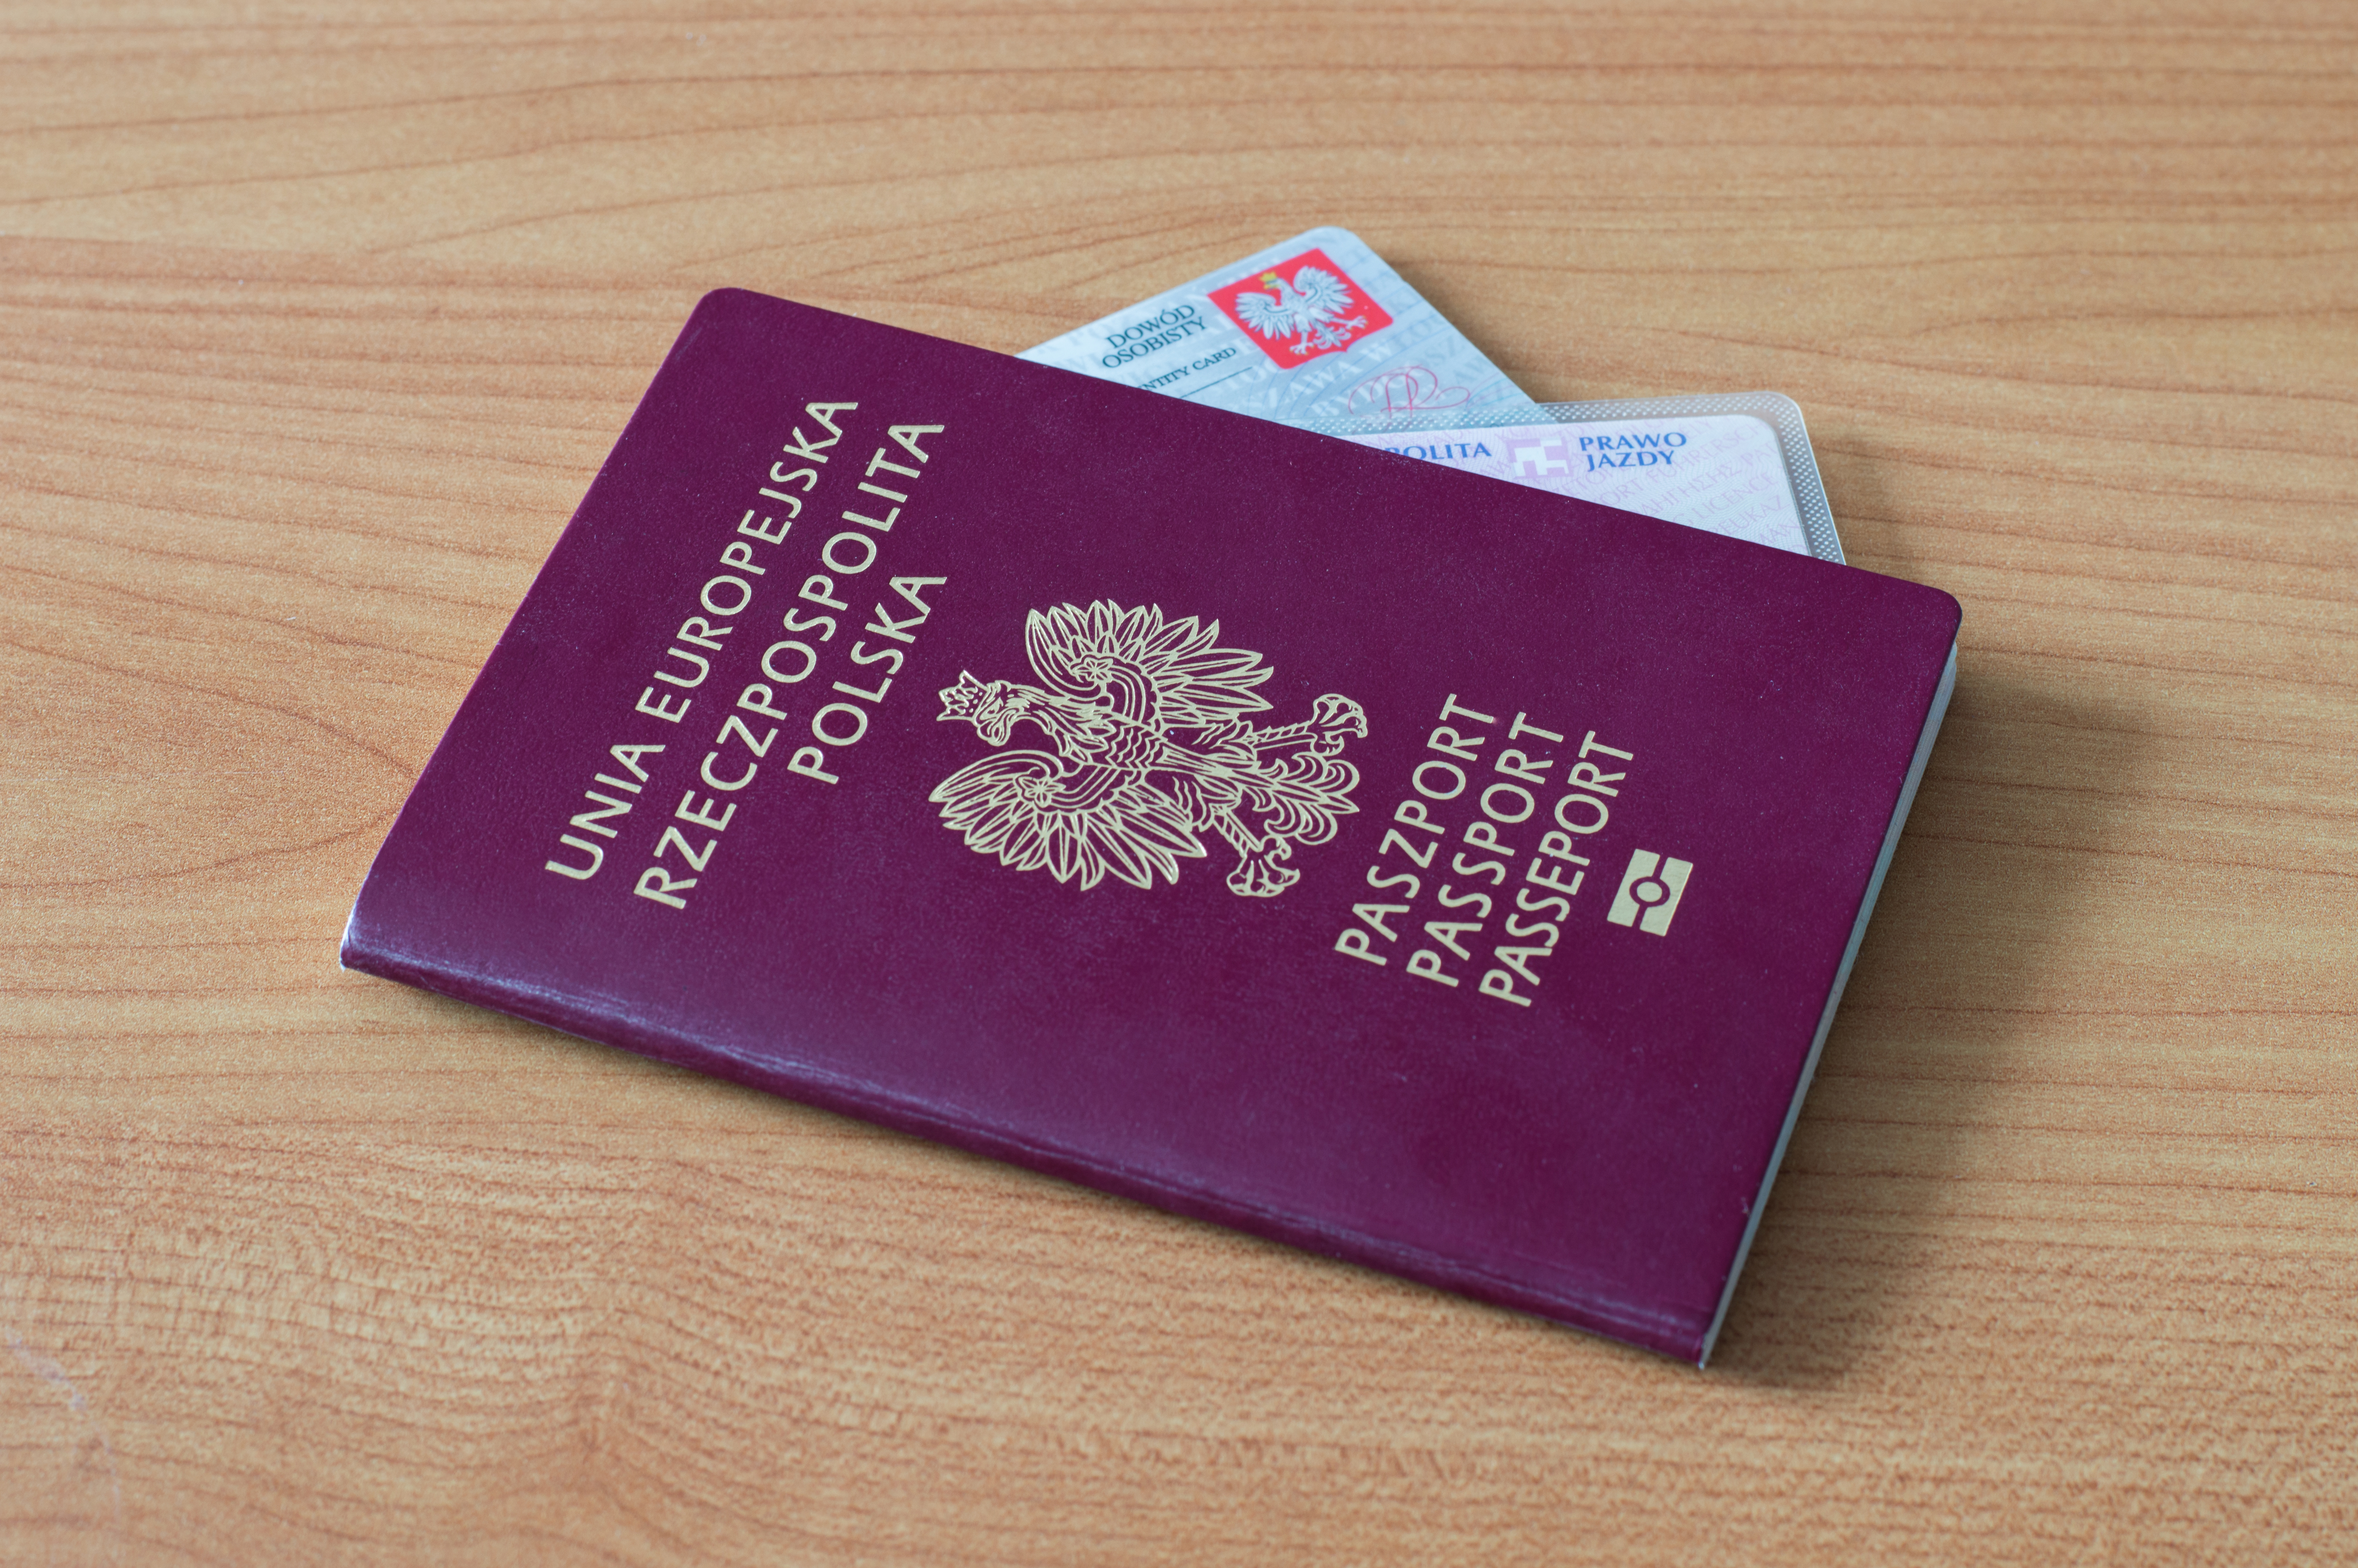 Паспорт Польши, где иностранцы могут получить Карту поляка